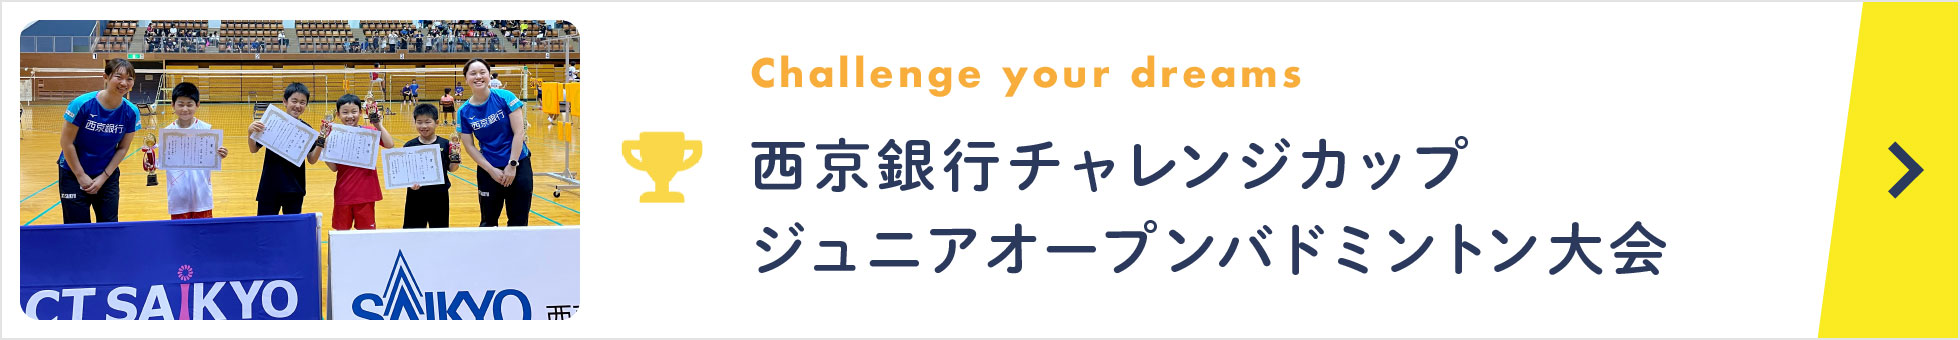 西京銀行チャレンジカップジュニアオープンバドミントン大会/Challenge your dreams